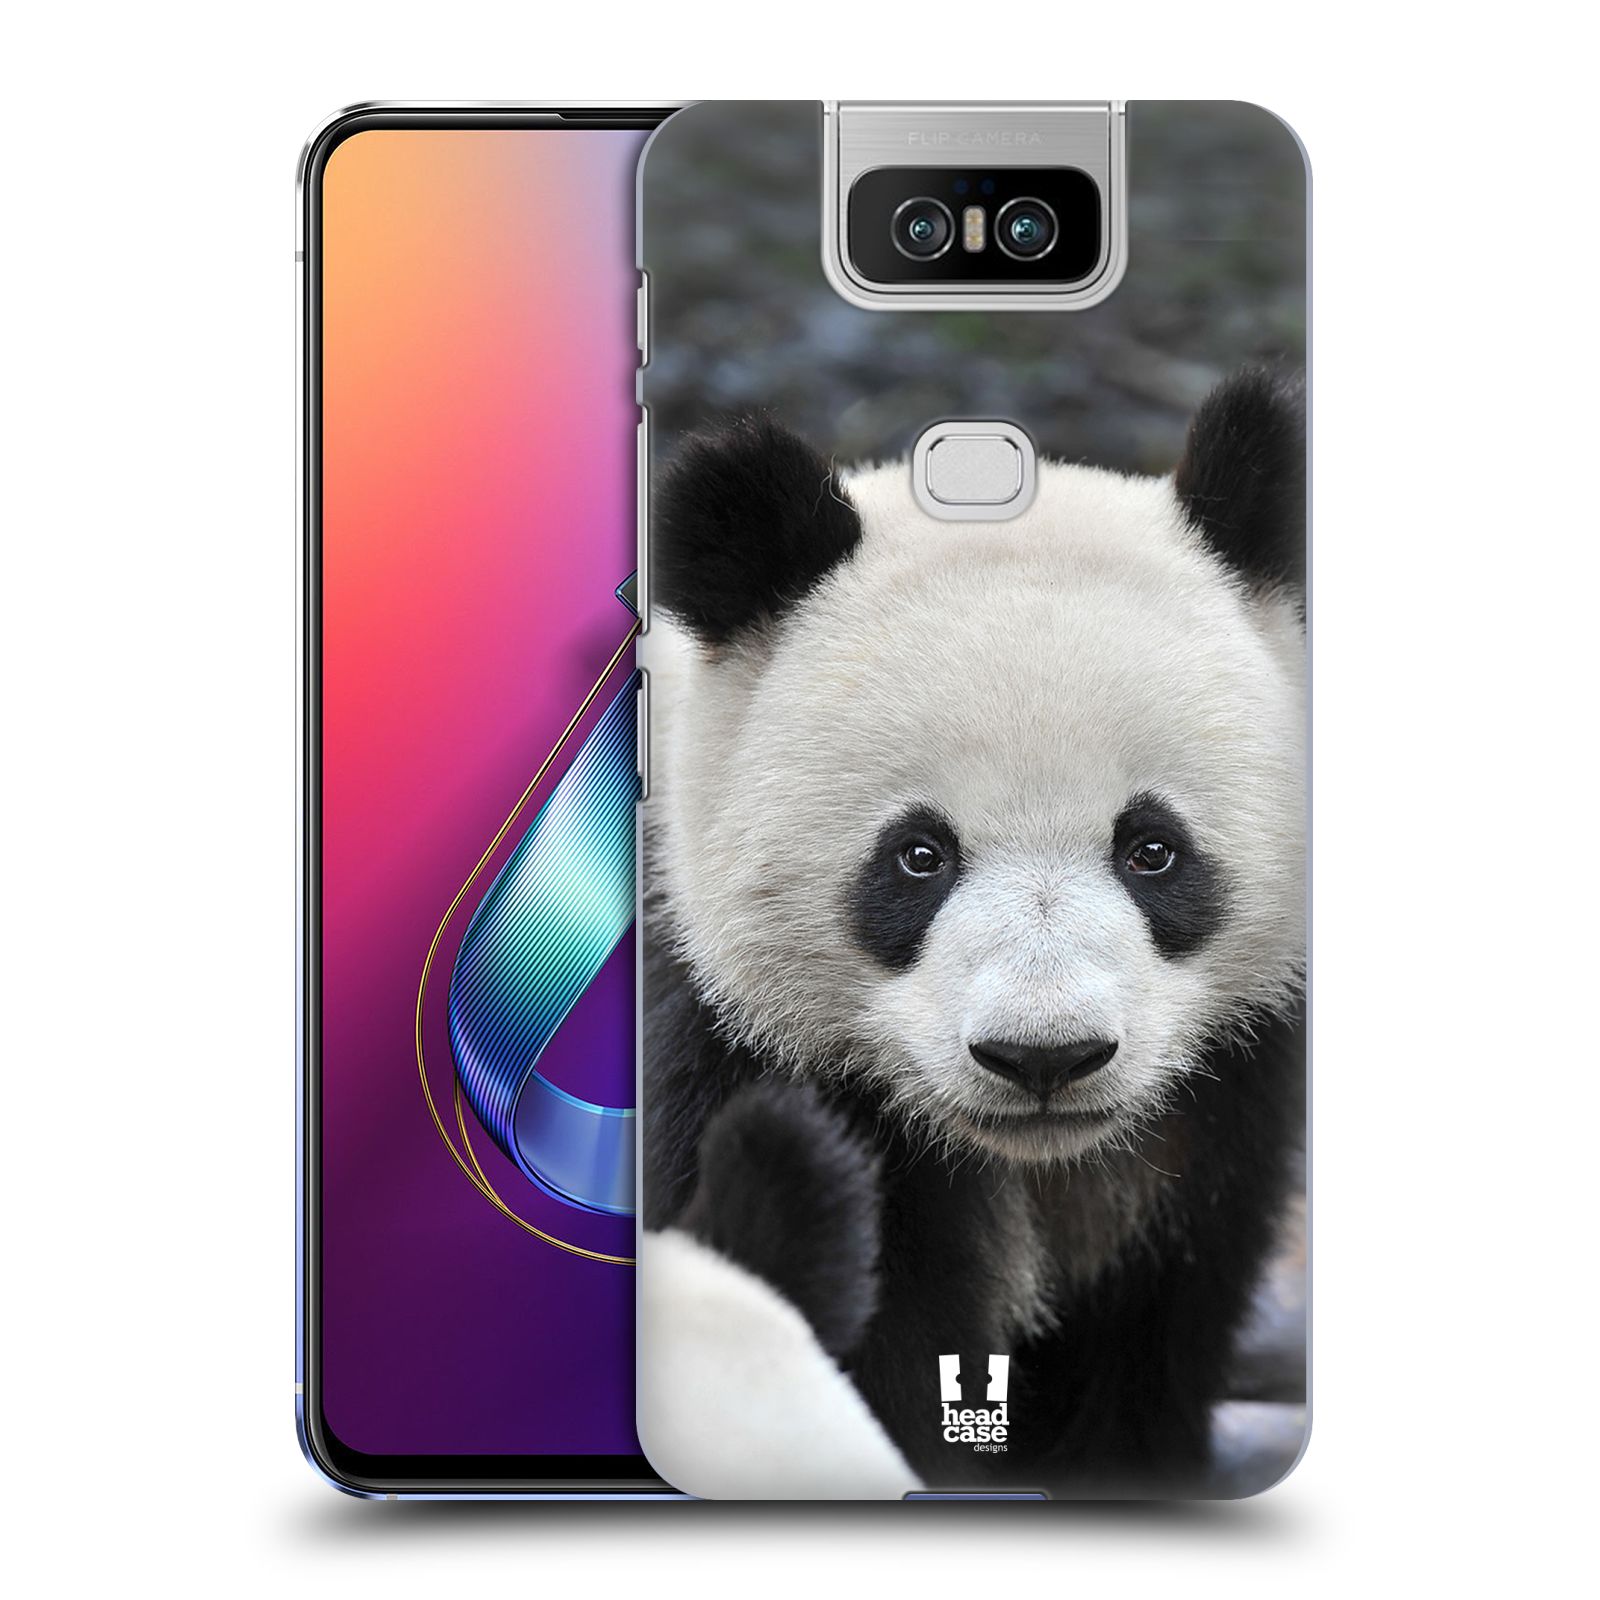 Zadní obal pro mobil Asus Zenfone 6 ZS630KL - HEAD CASE - Svět zvířat medvěd panda